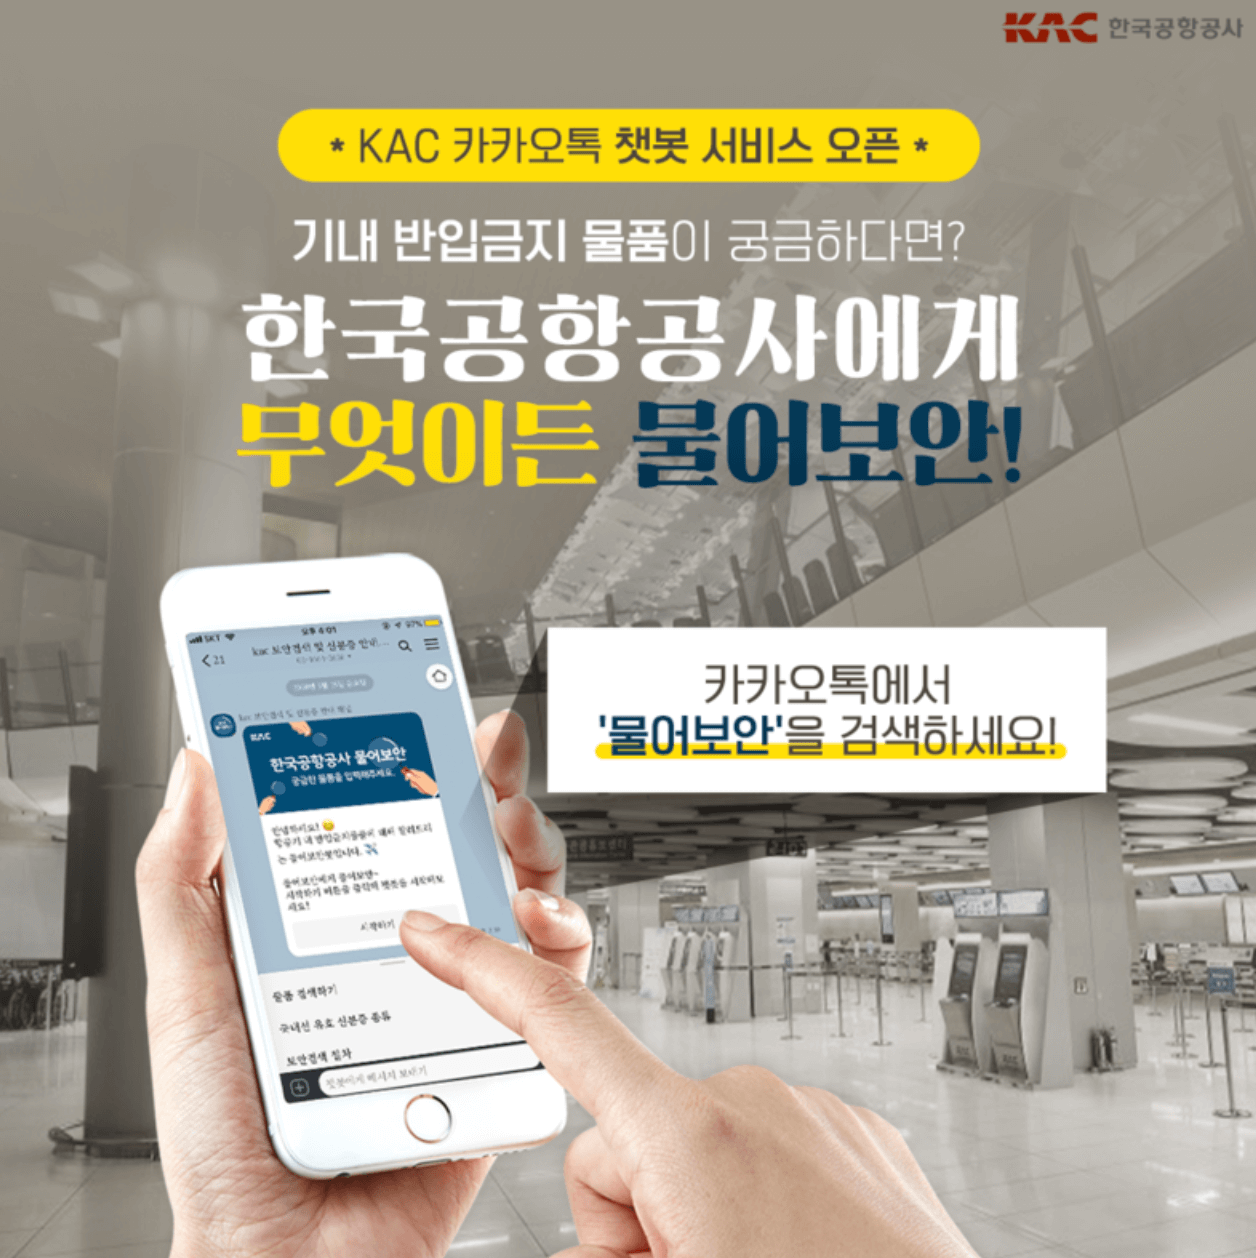 한국공항공사 카카오톡 챗봇 물어보안